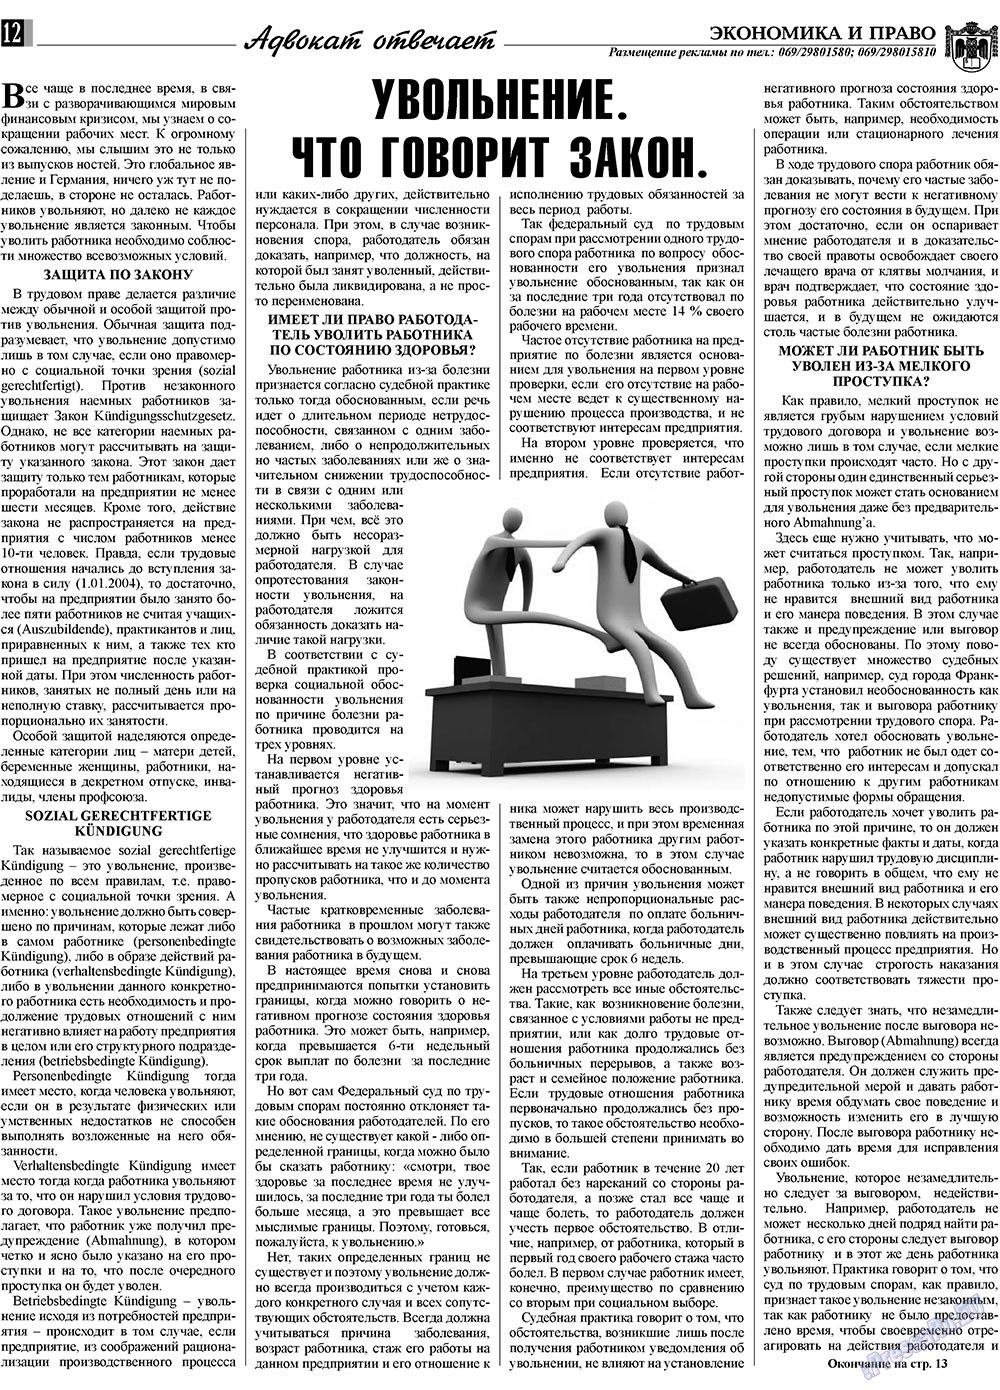 Экономика и право, газета. 2009 №2 стр.12